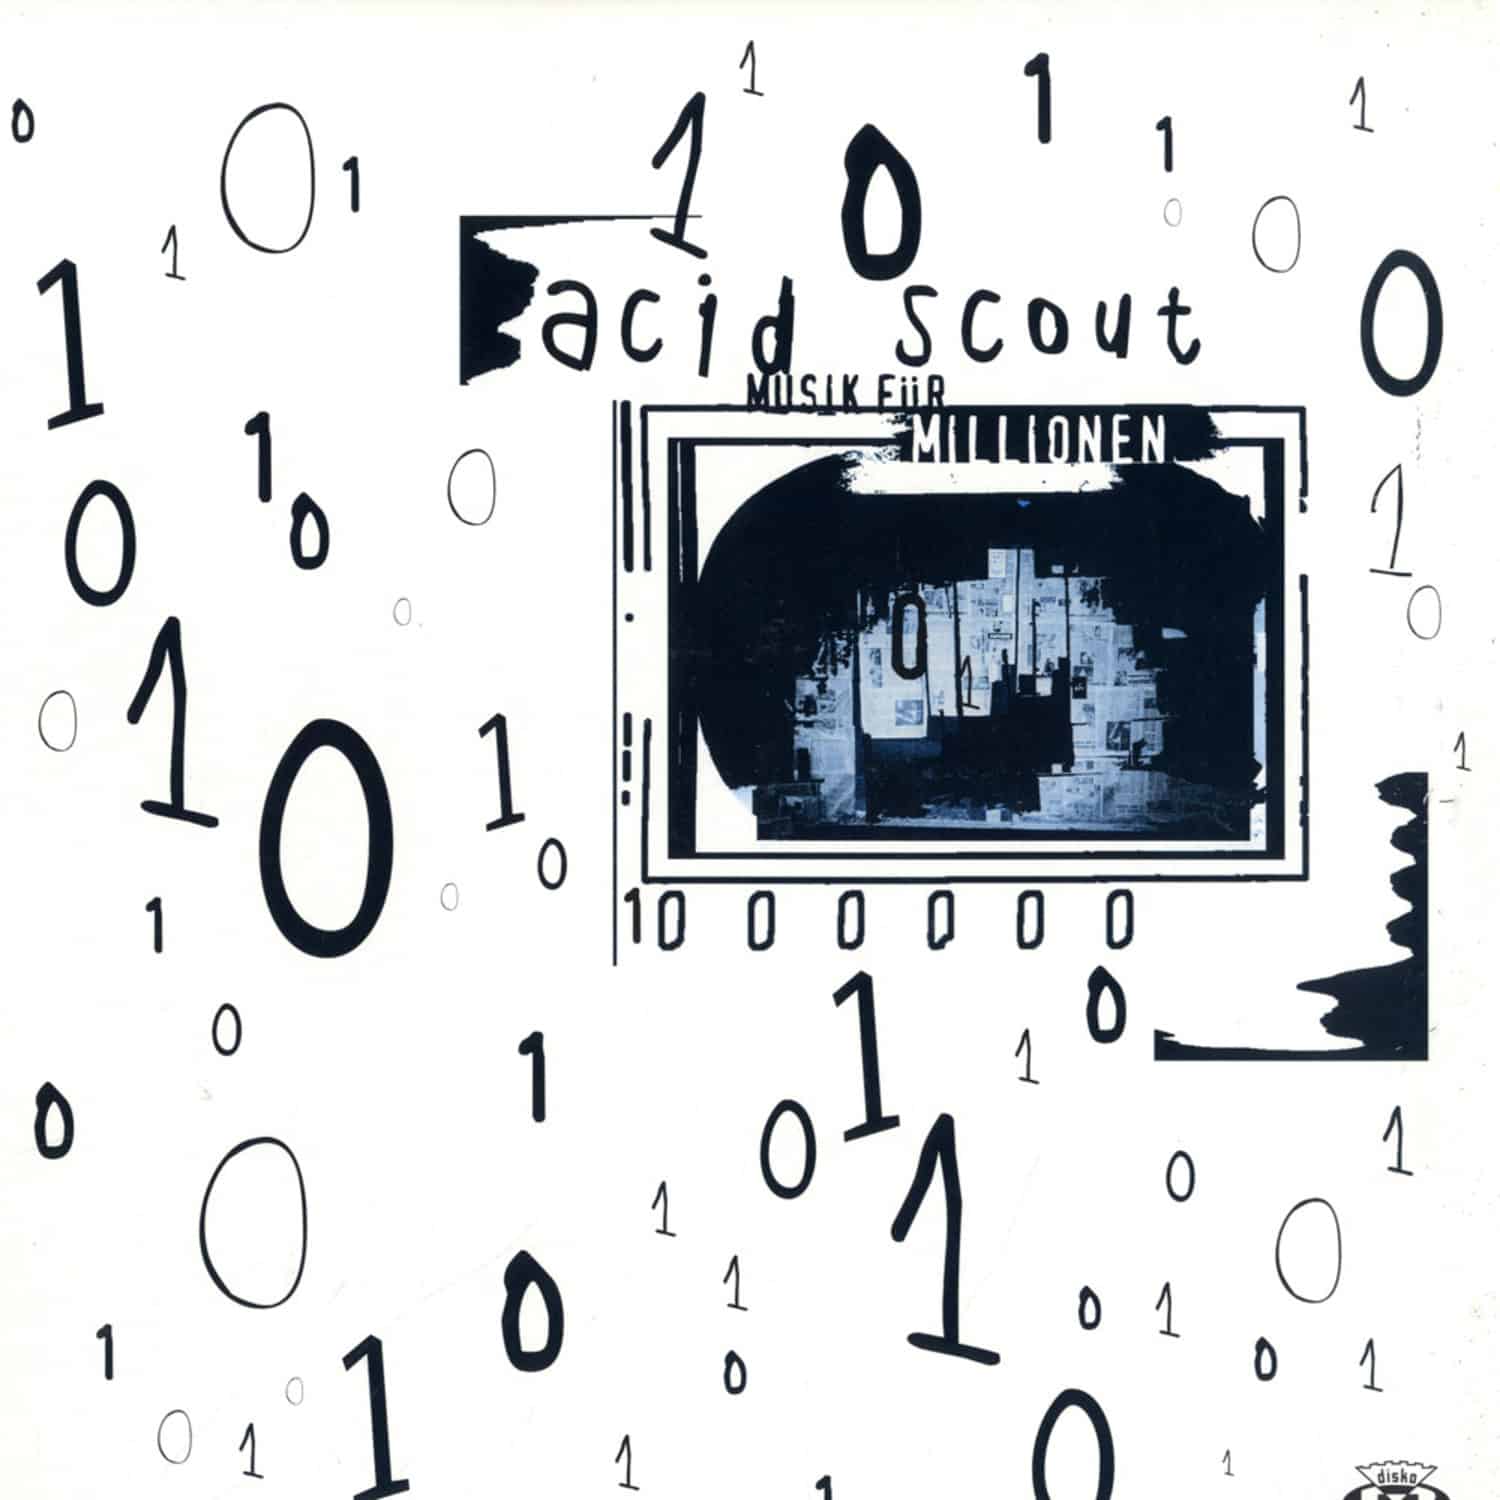 Acid Scout - MUSIK FUR MILLIONEN 